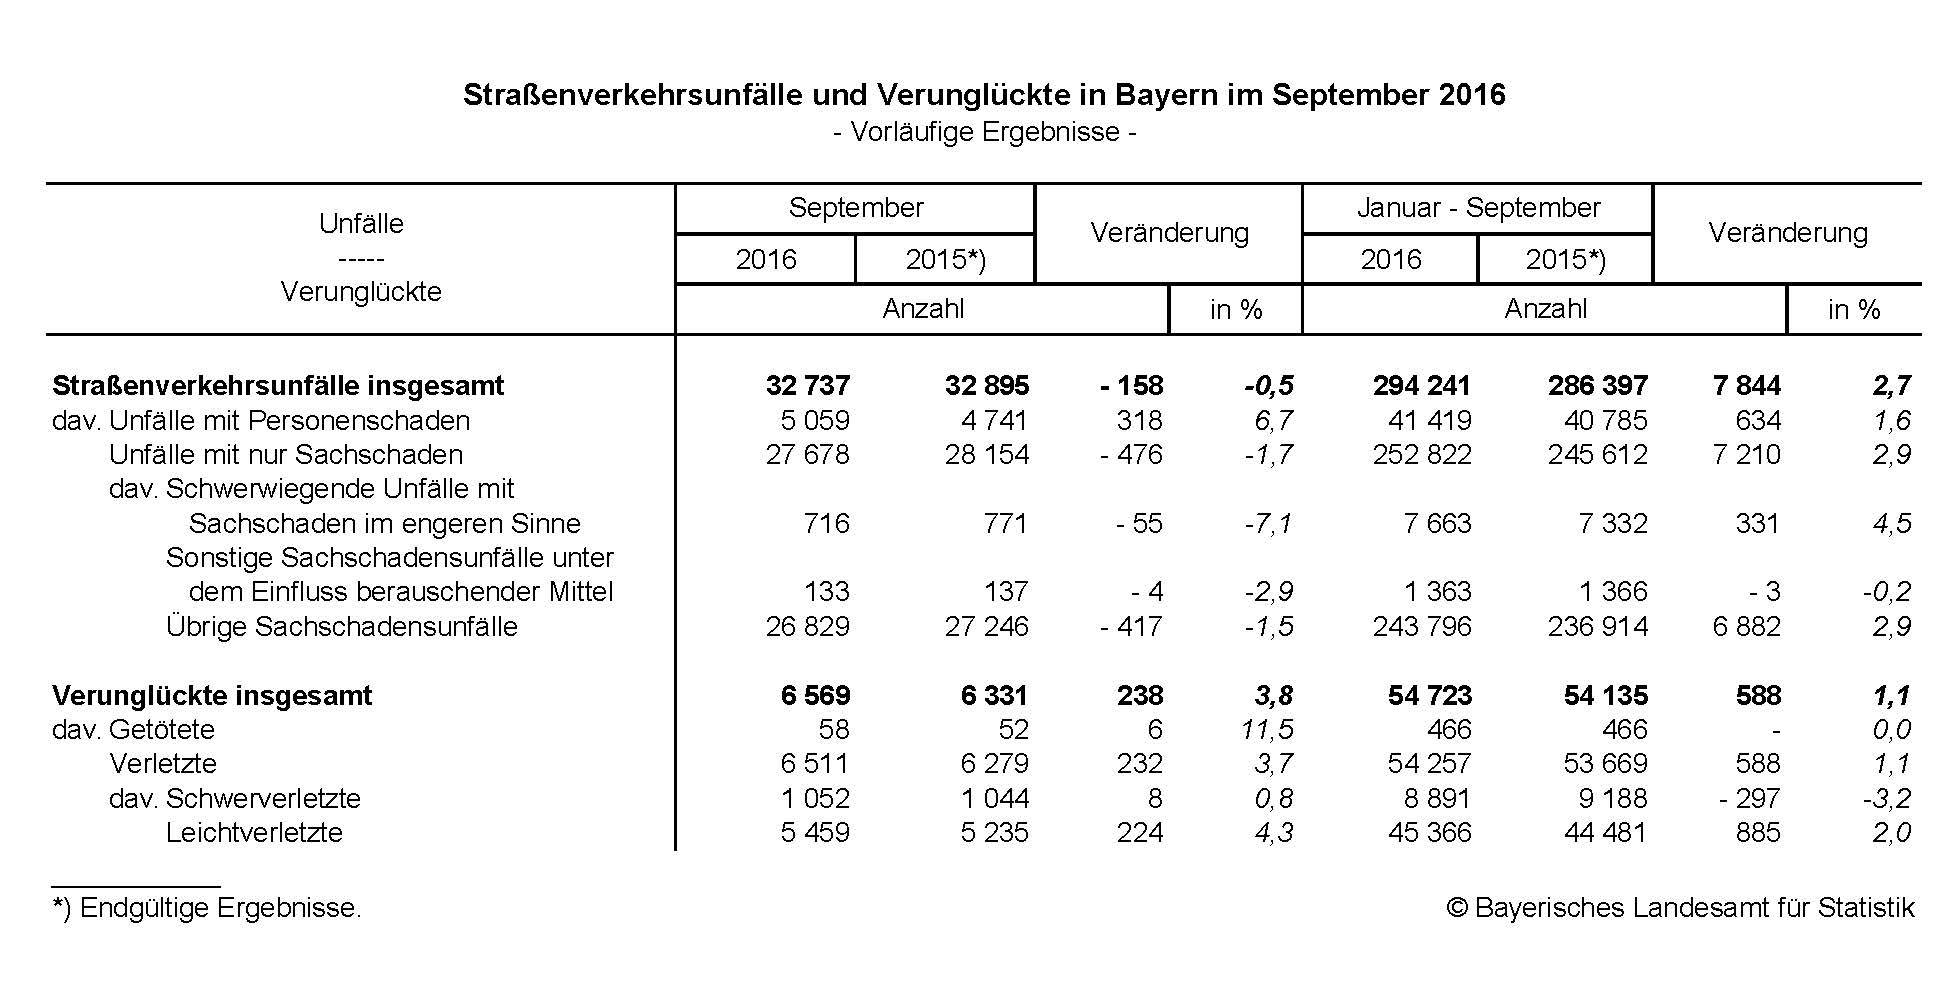 Straßenverkehrsunfälle und Verunglückte in Bayern im September 2016